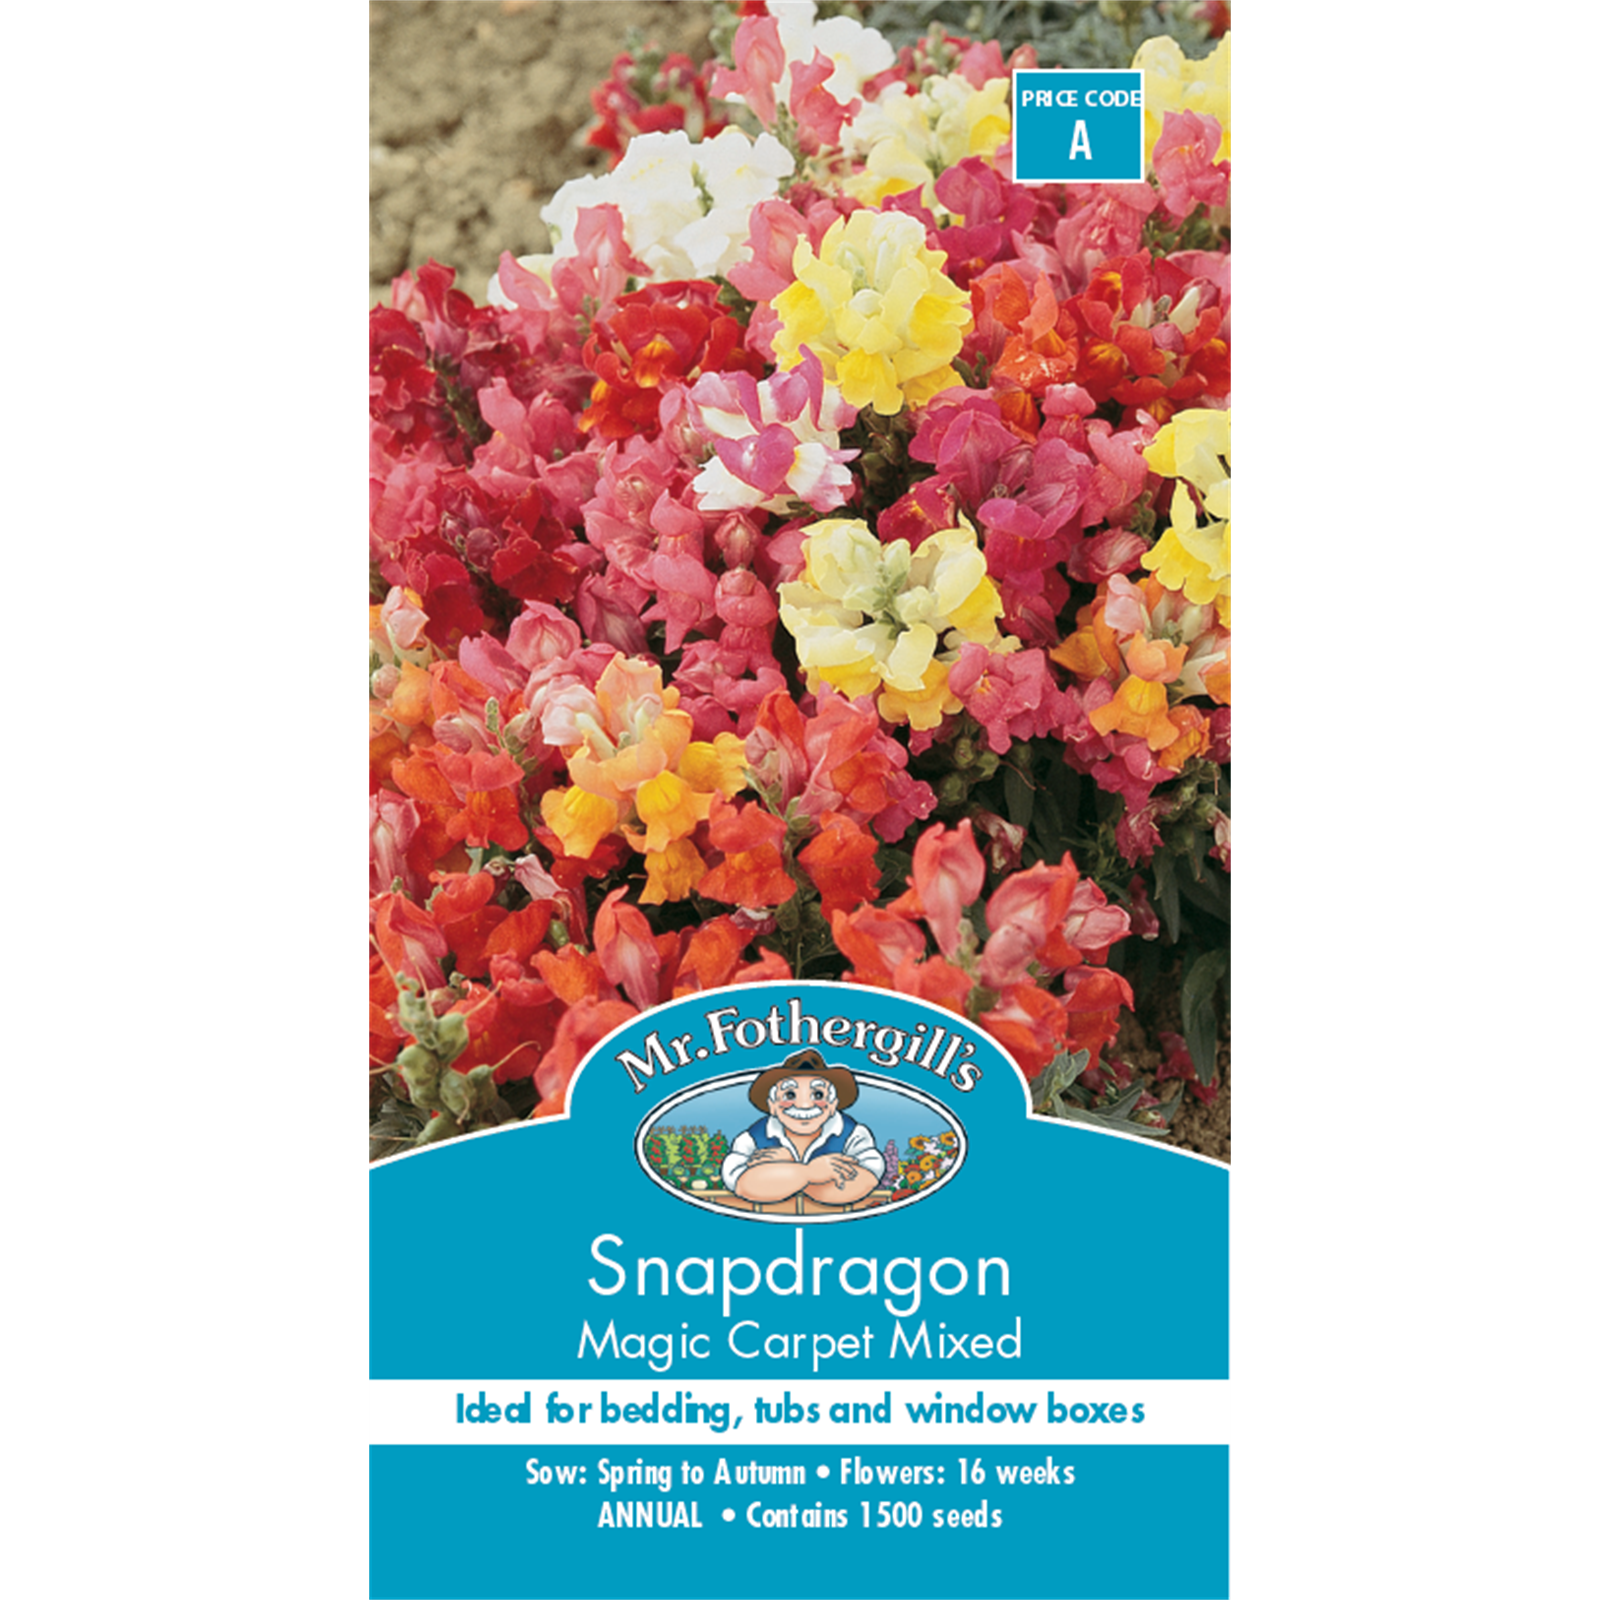 Mr Fothergill's Snapdragon Magic Carpet Flower Seeds